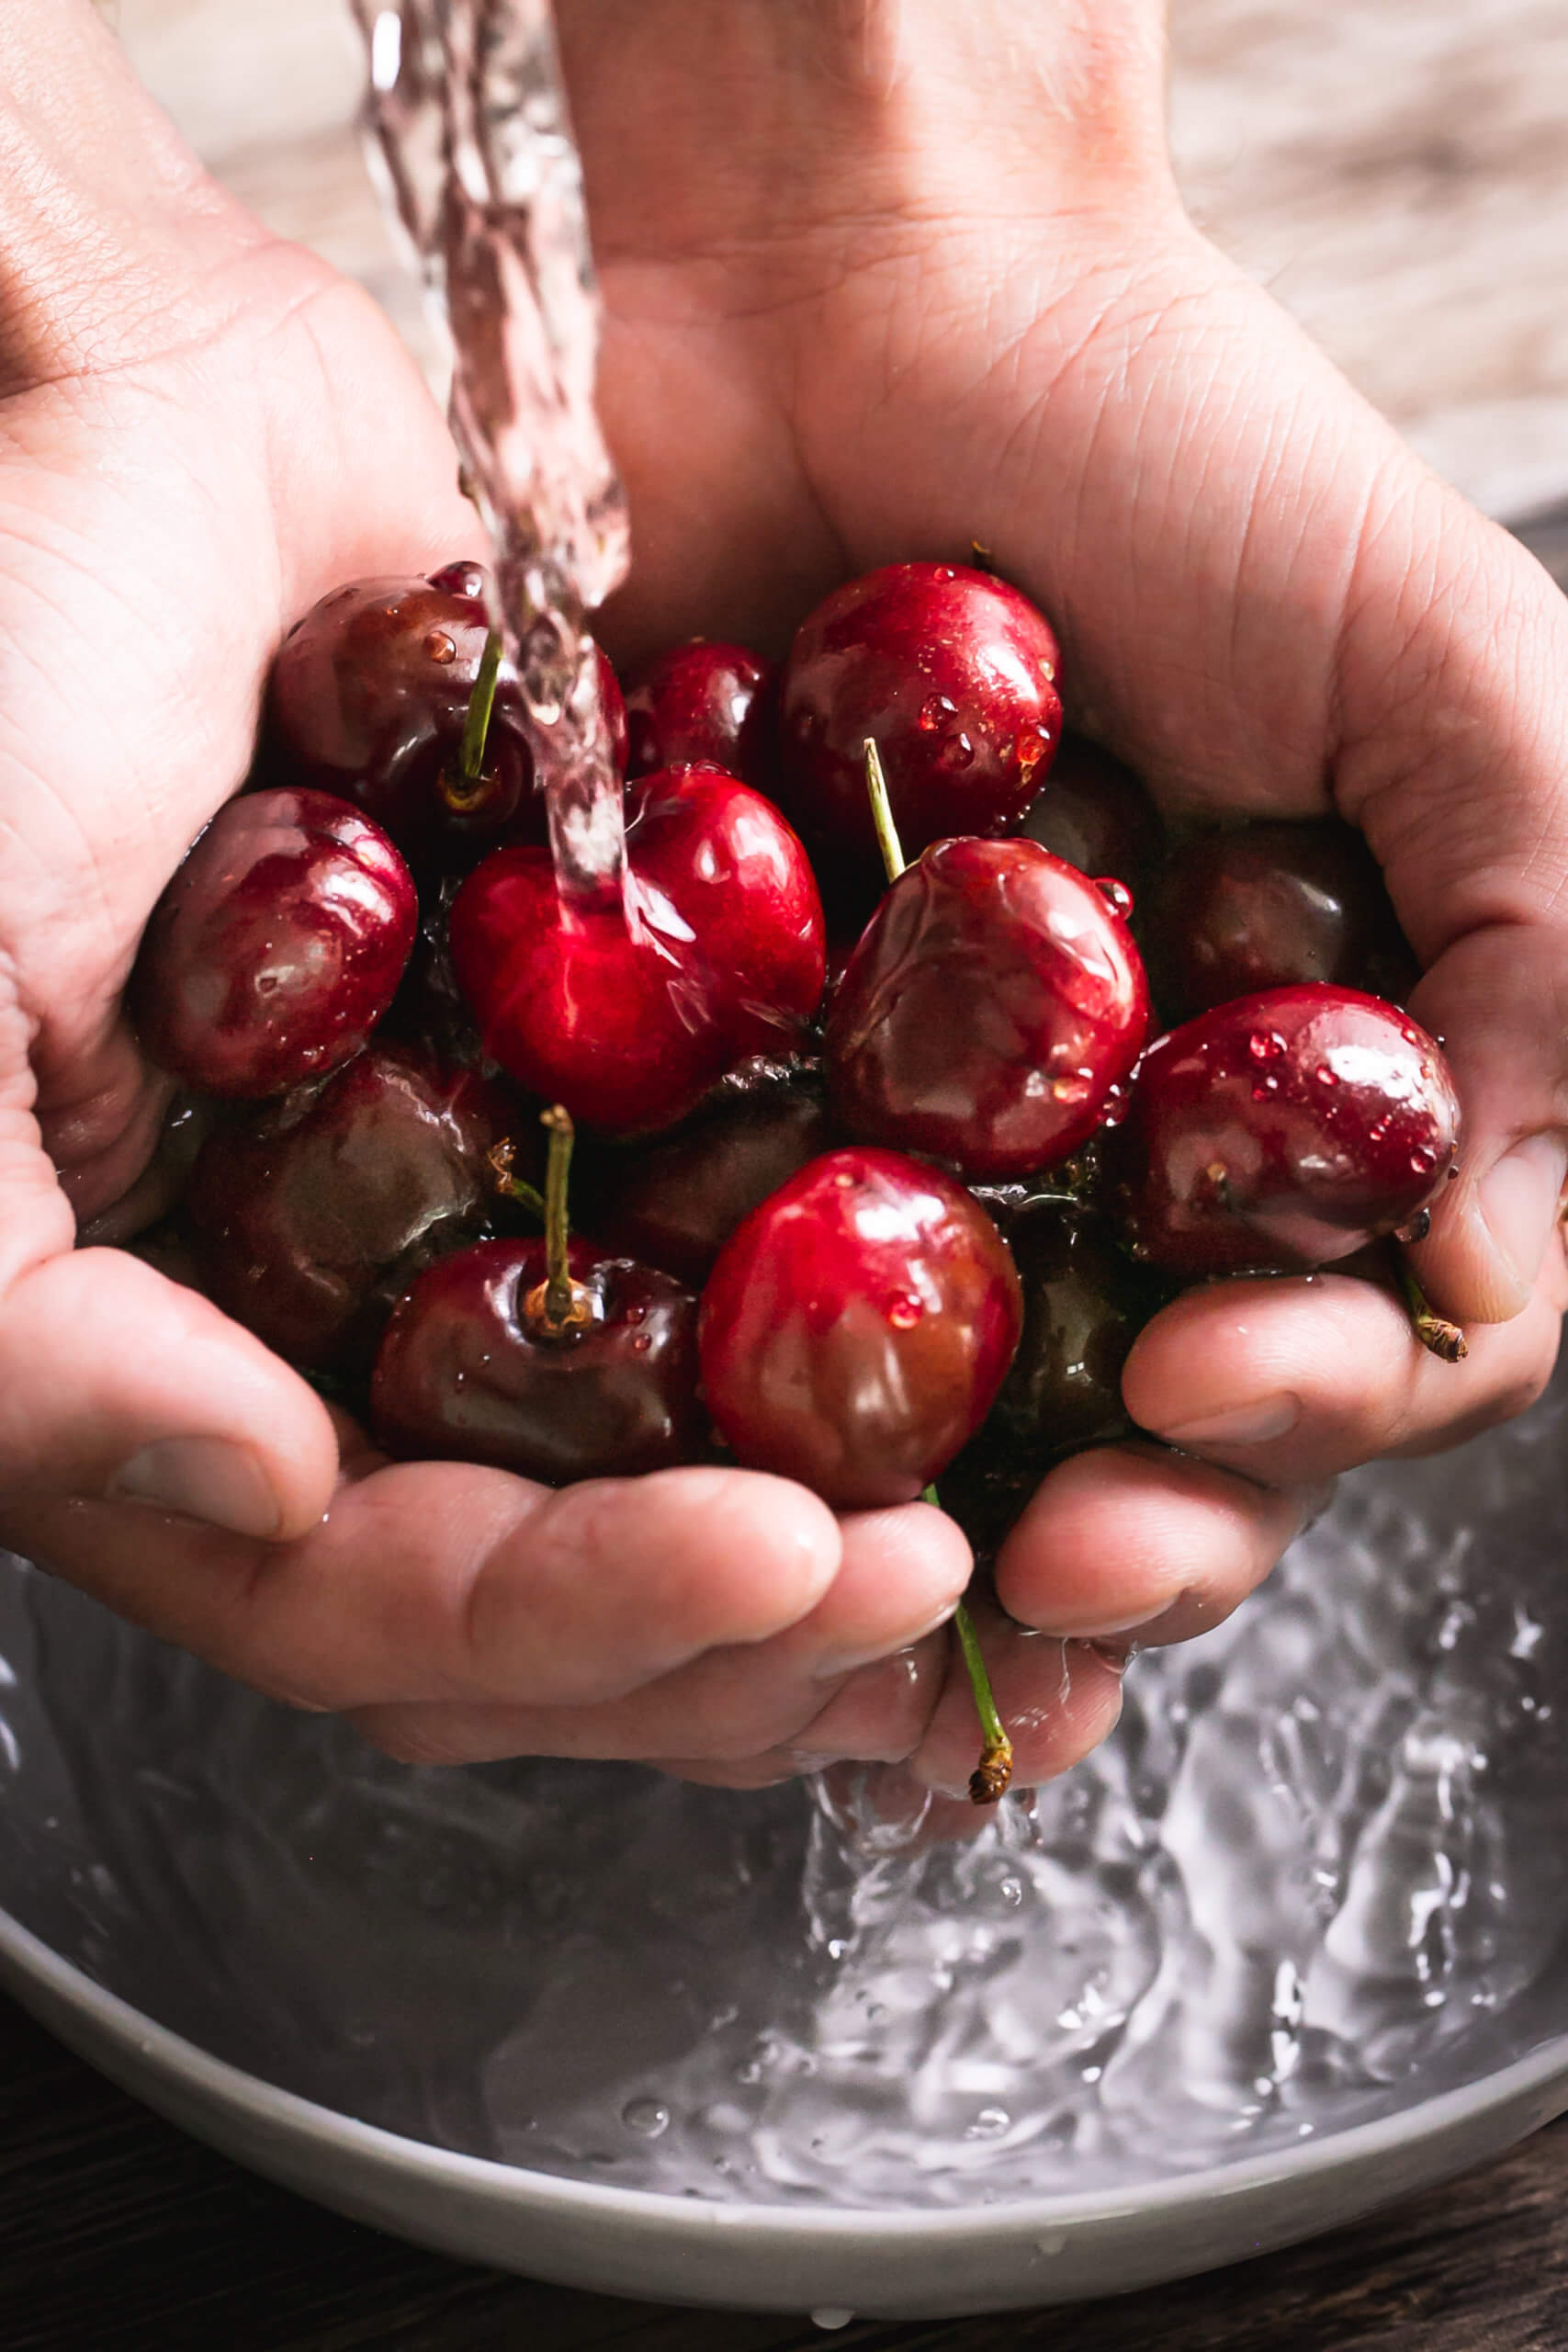 A handful of cherries being rinsed under water